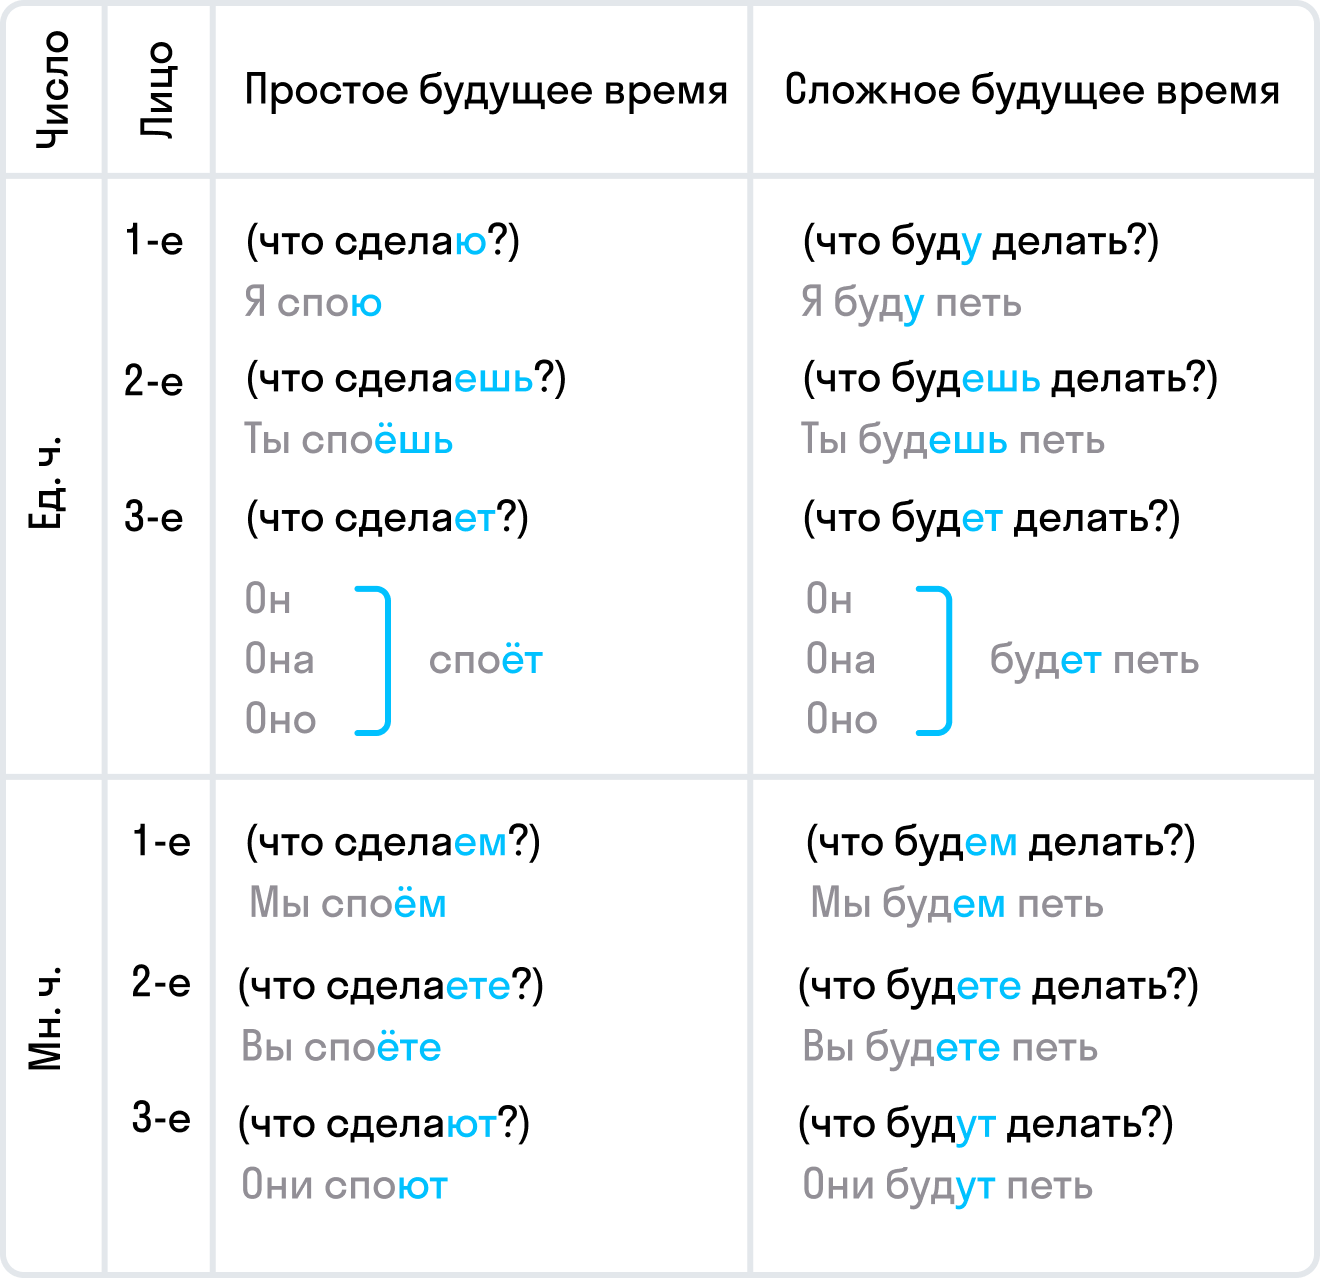 Вопросы со временем в английском языке. Будущее время в русском языке.